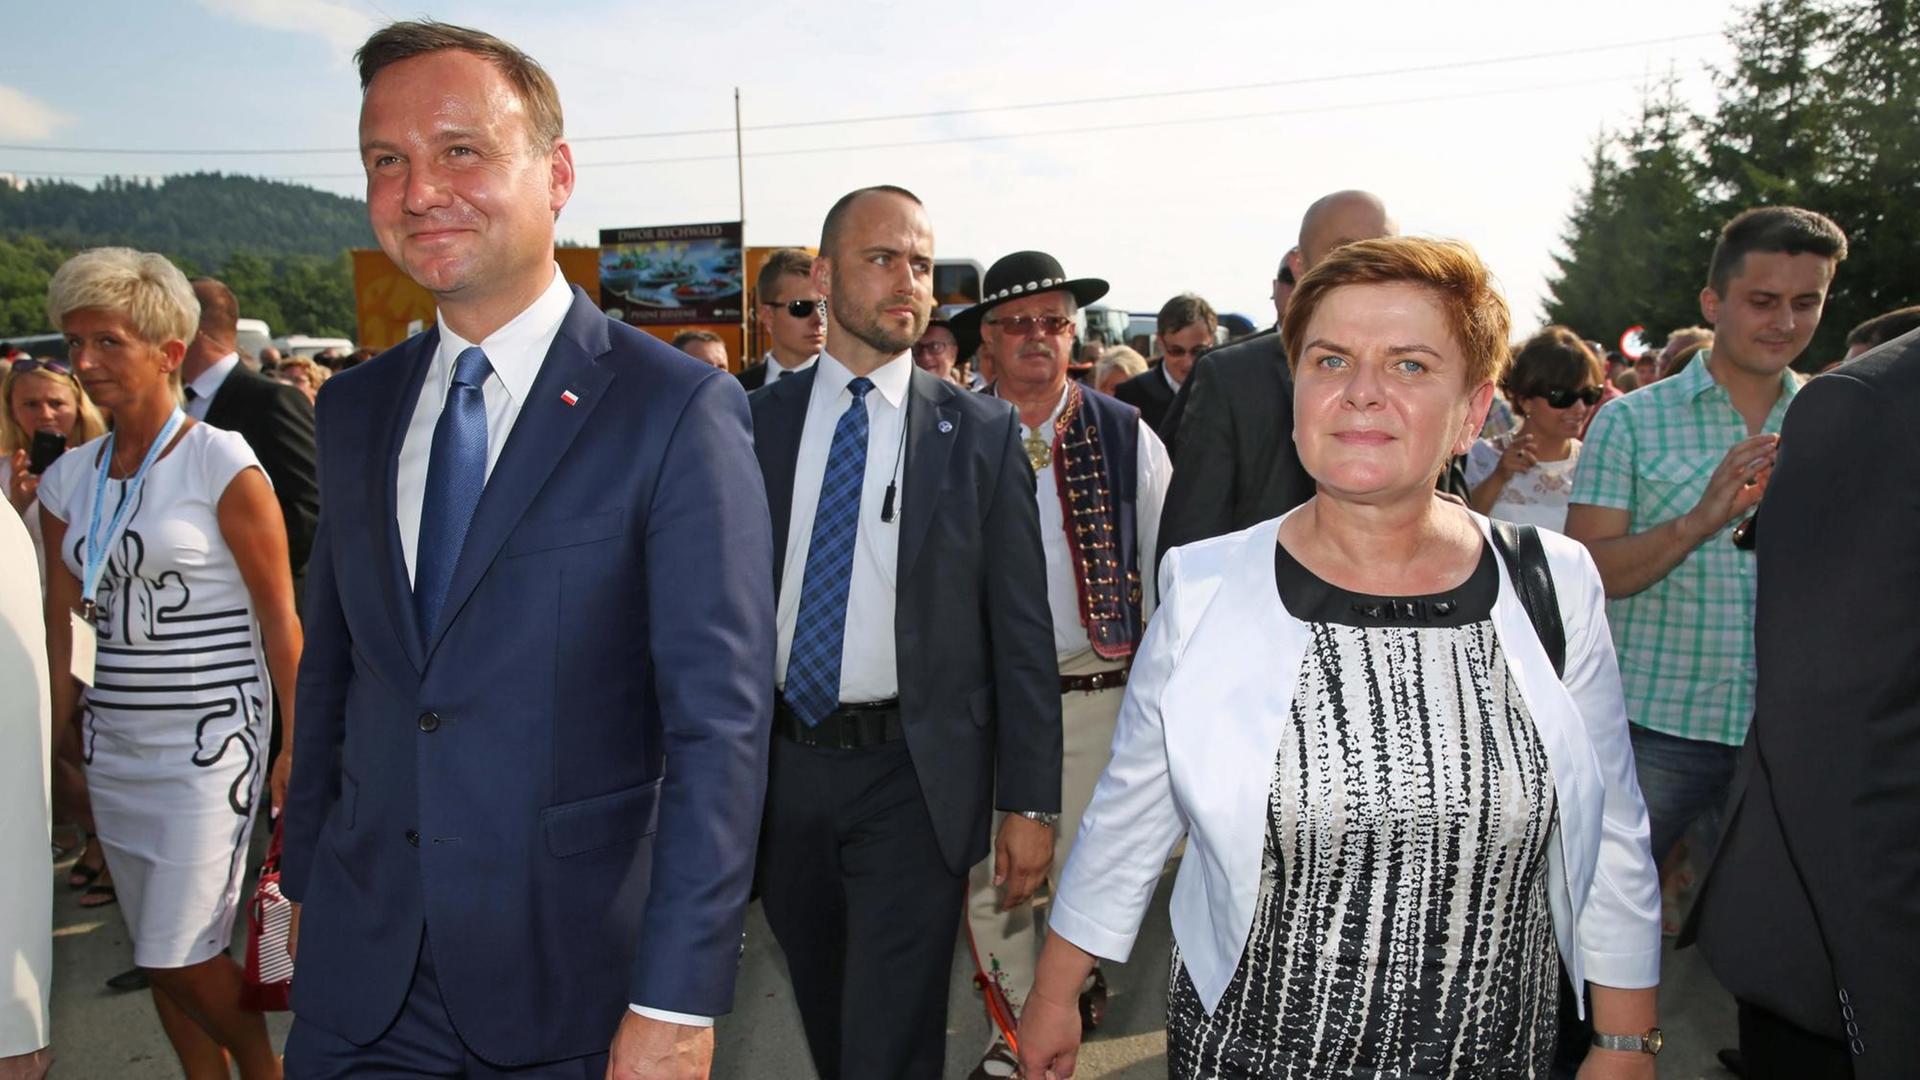 Polens Präsident Andrzej Duda und Spitzenkandidatin Beata Szydlo von der Partei "Recht und Gerechtigkeit" laufen mit anderen Menschen auf einer Straße.